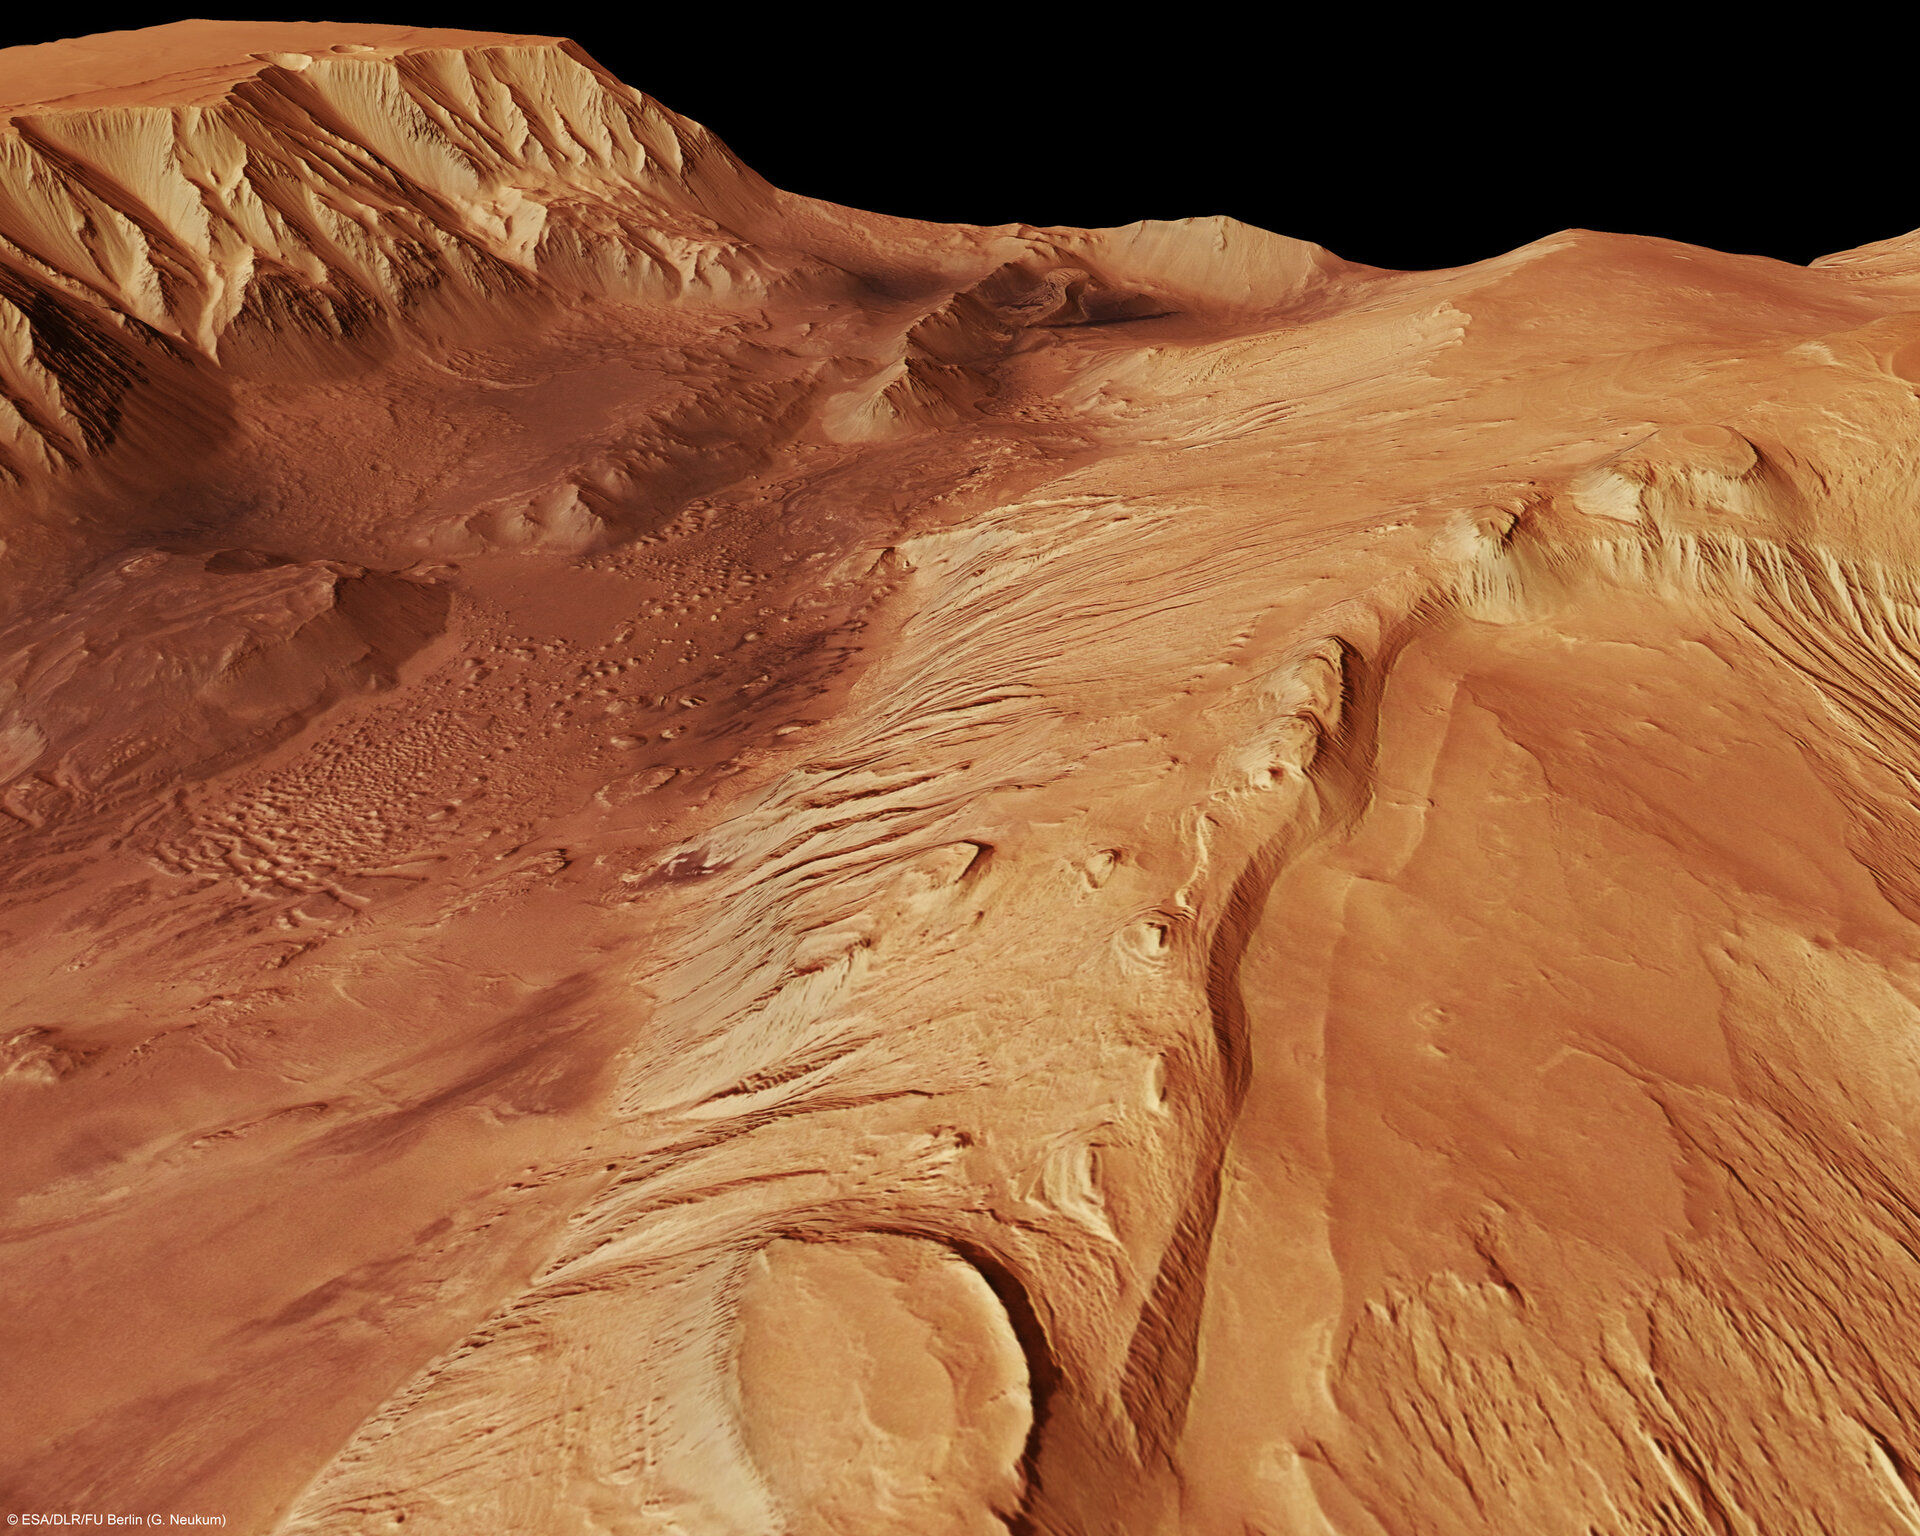 Перспективный снимок каньона Valles Marineris, сделанный европейской миссией "Марс Экспресс". Предоставлено: ESA / DLR / FU Berlin (Г. Нойкум), CC BY-SA 3.0 IGO.